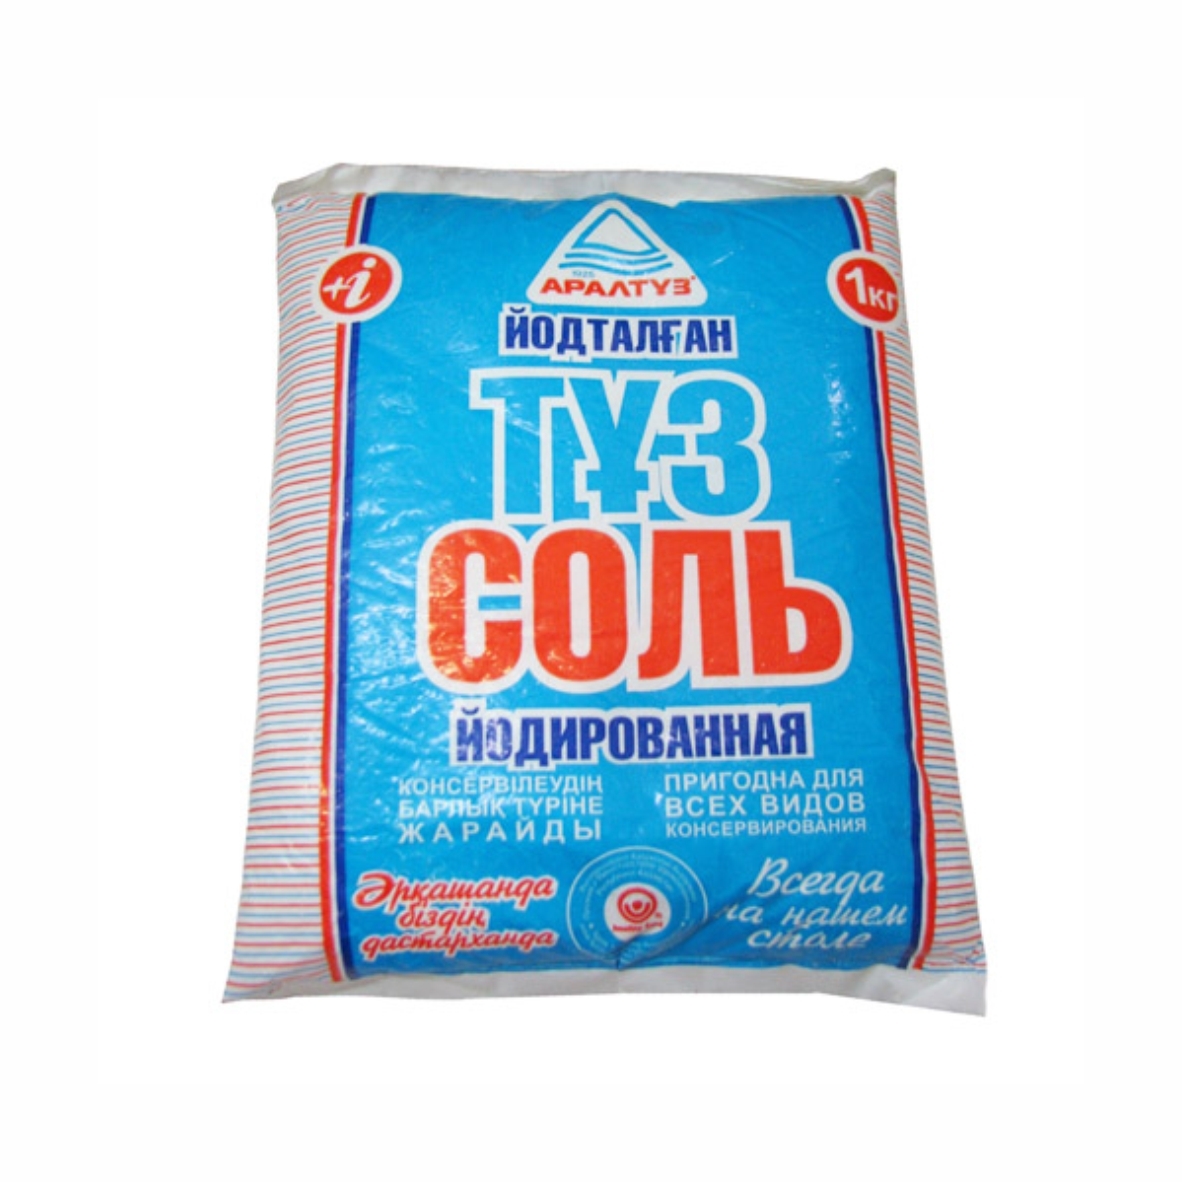 Куплю соль в казахстане пудра рассыпчатая becca hydra mist купить